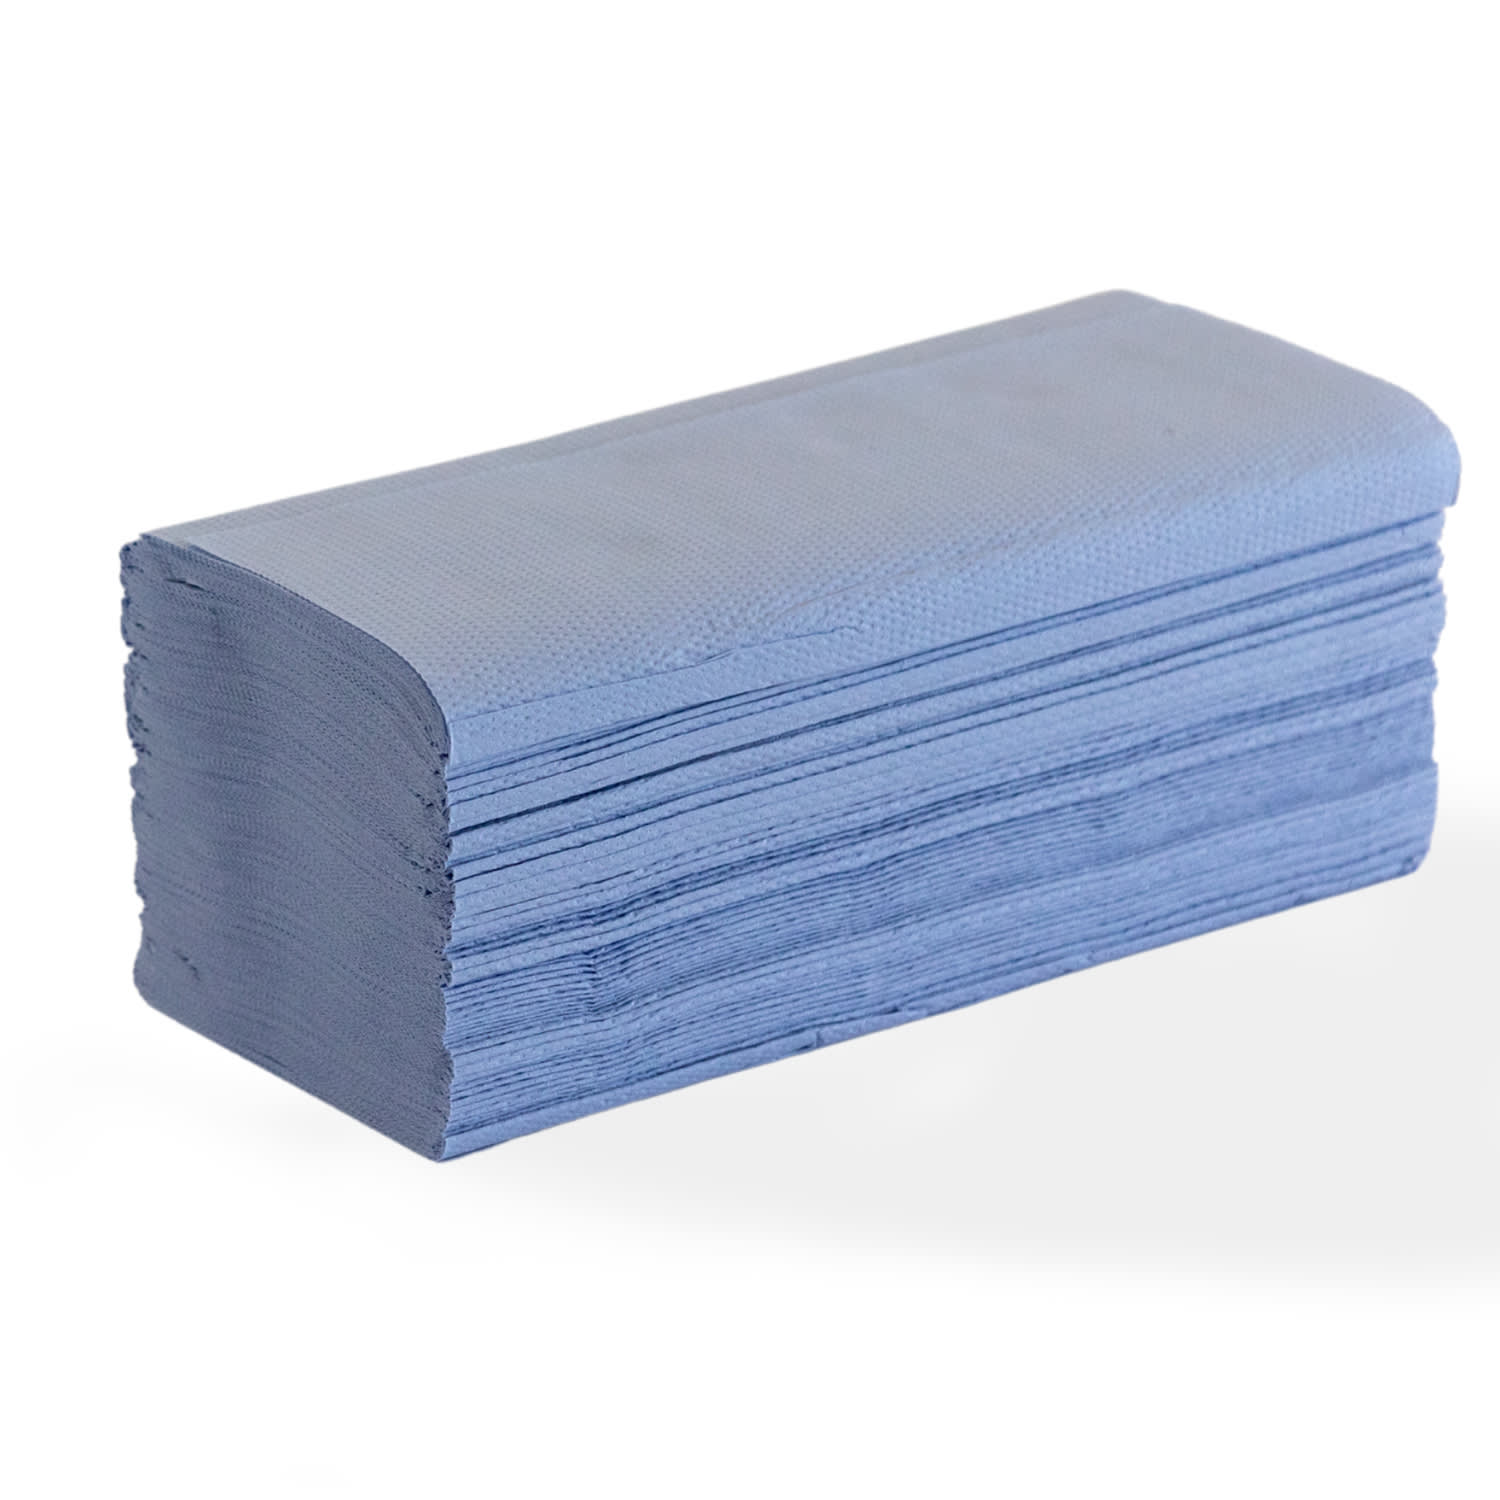 Essuie-mains plié bleu 2 plis 24 x 21 cm certifié Ecolabel photo du produit